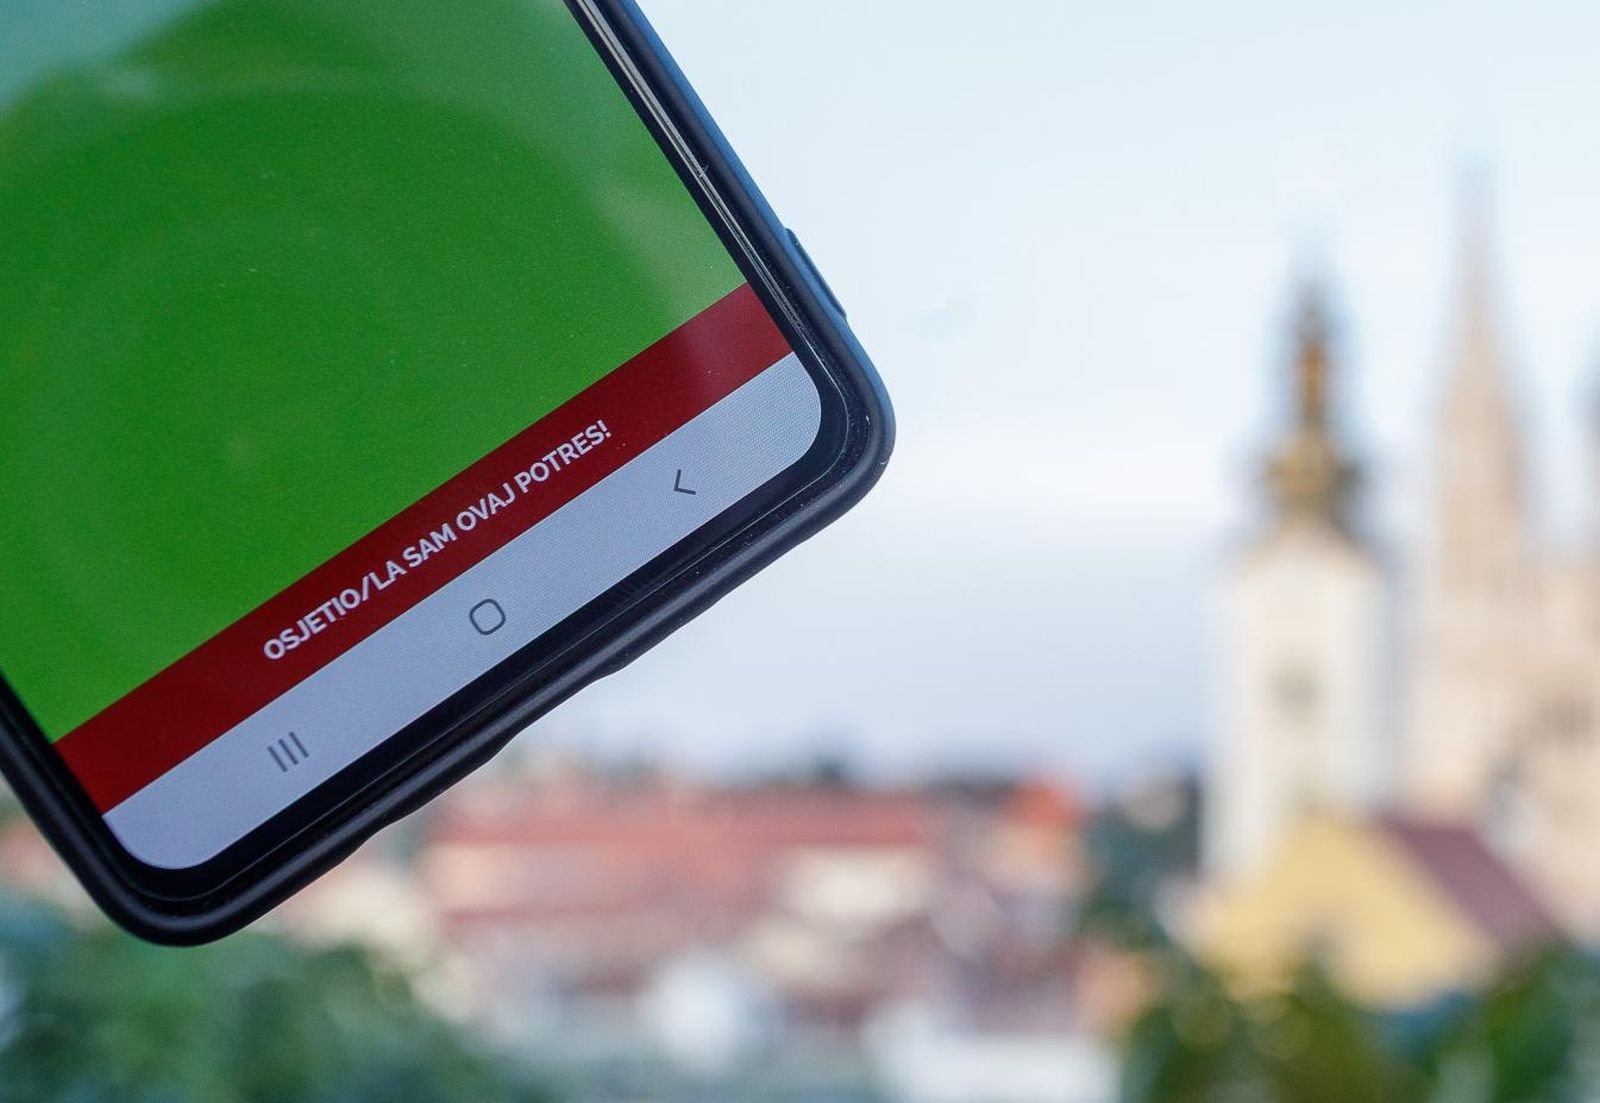 16.09.2020., Zagreb - EMSC: Earthquakes for mobile, aplikacija za pracenje potresa.
Photo: Davor Puklavec/PIXSELL